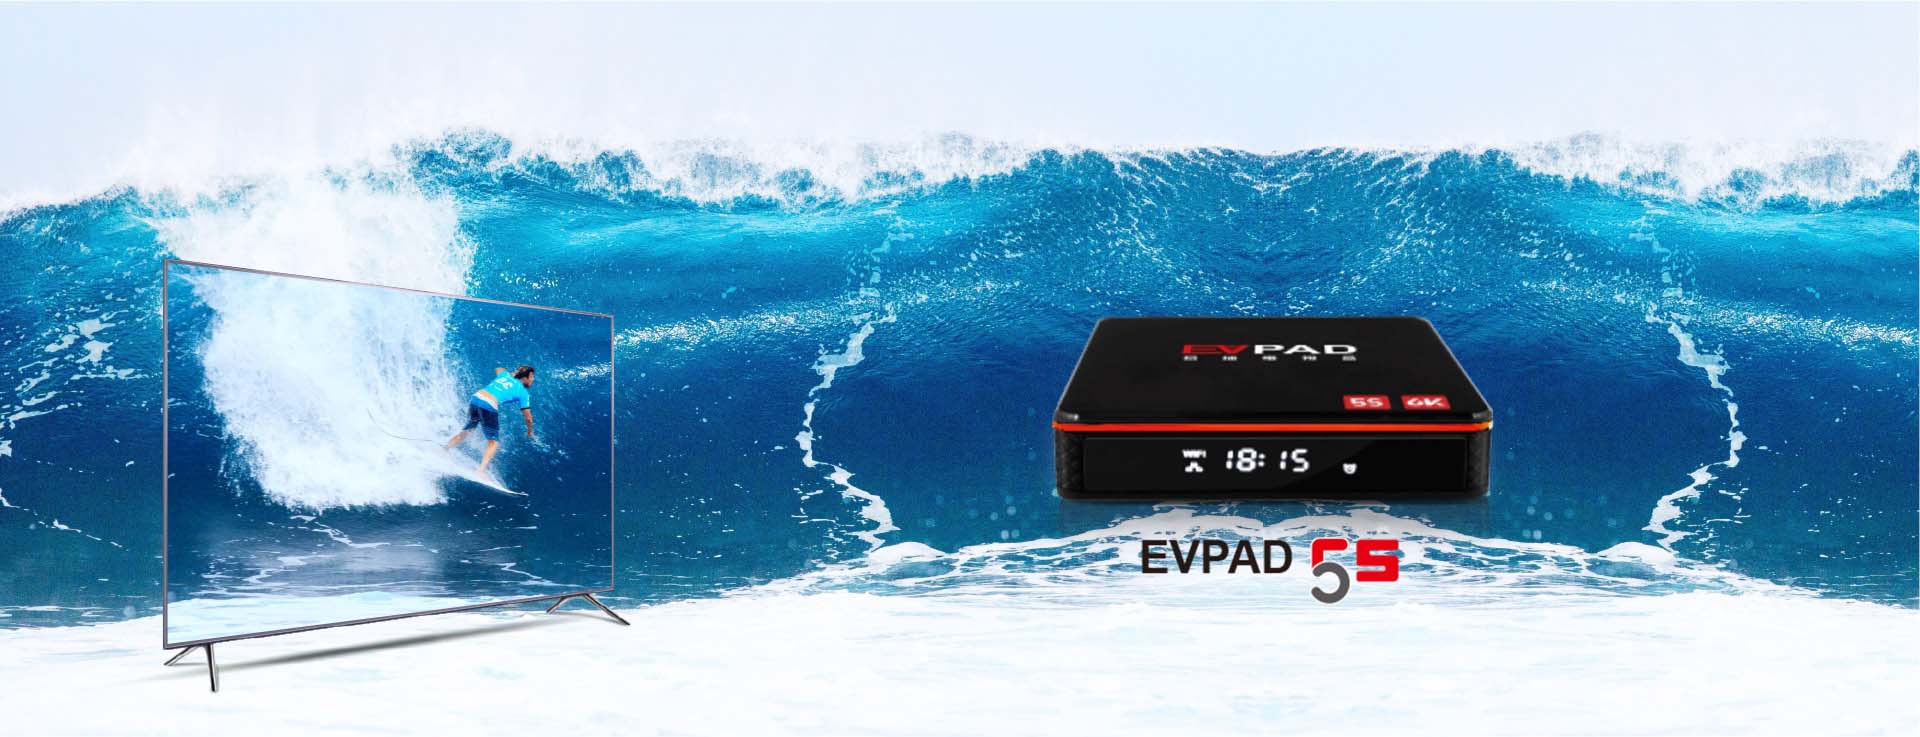 EVPAD 5S - ANG 1ST VOICE-ACTIVATED AI TV BOX NG MUNDO